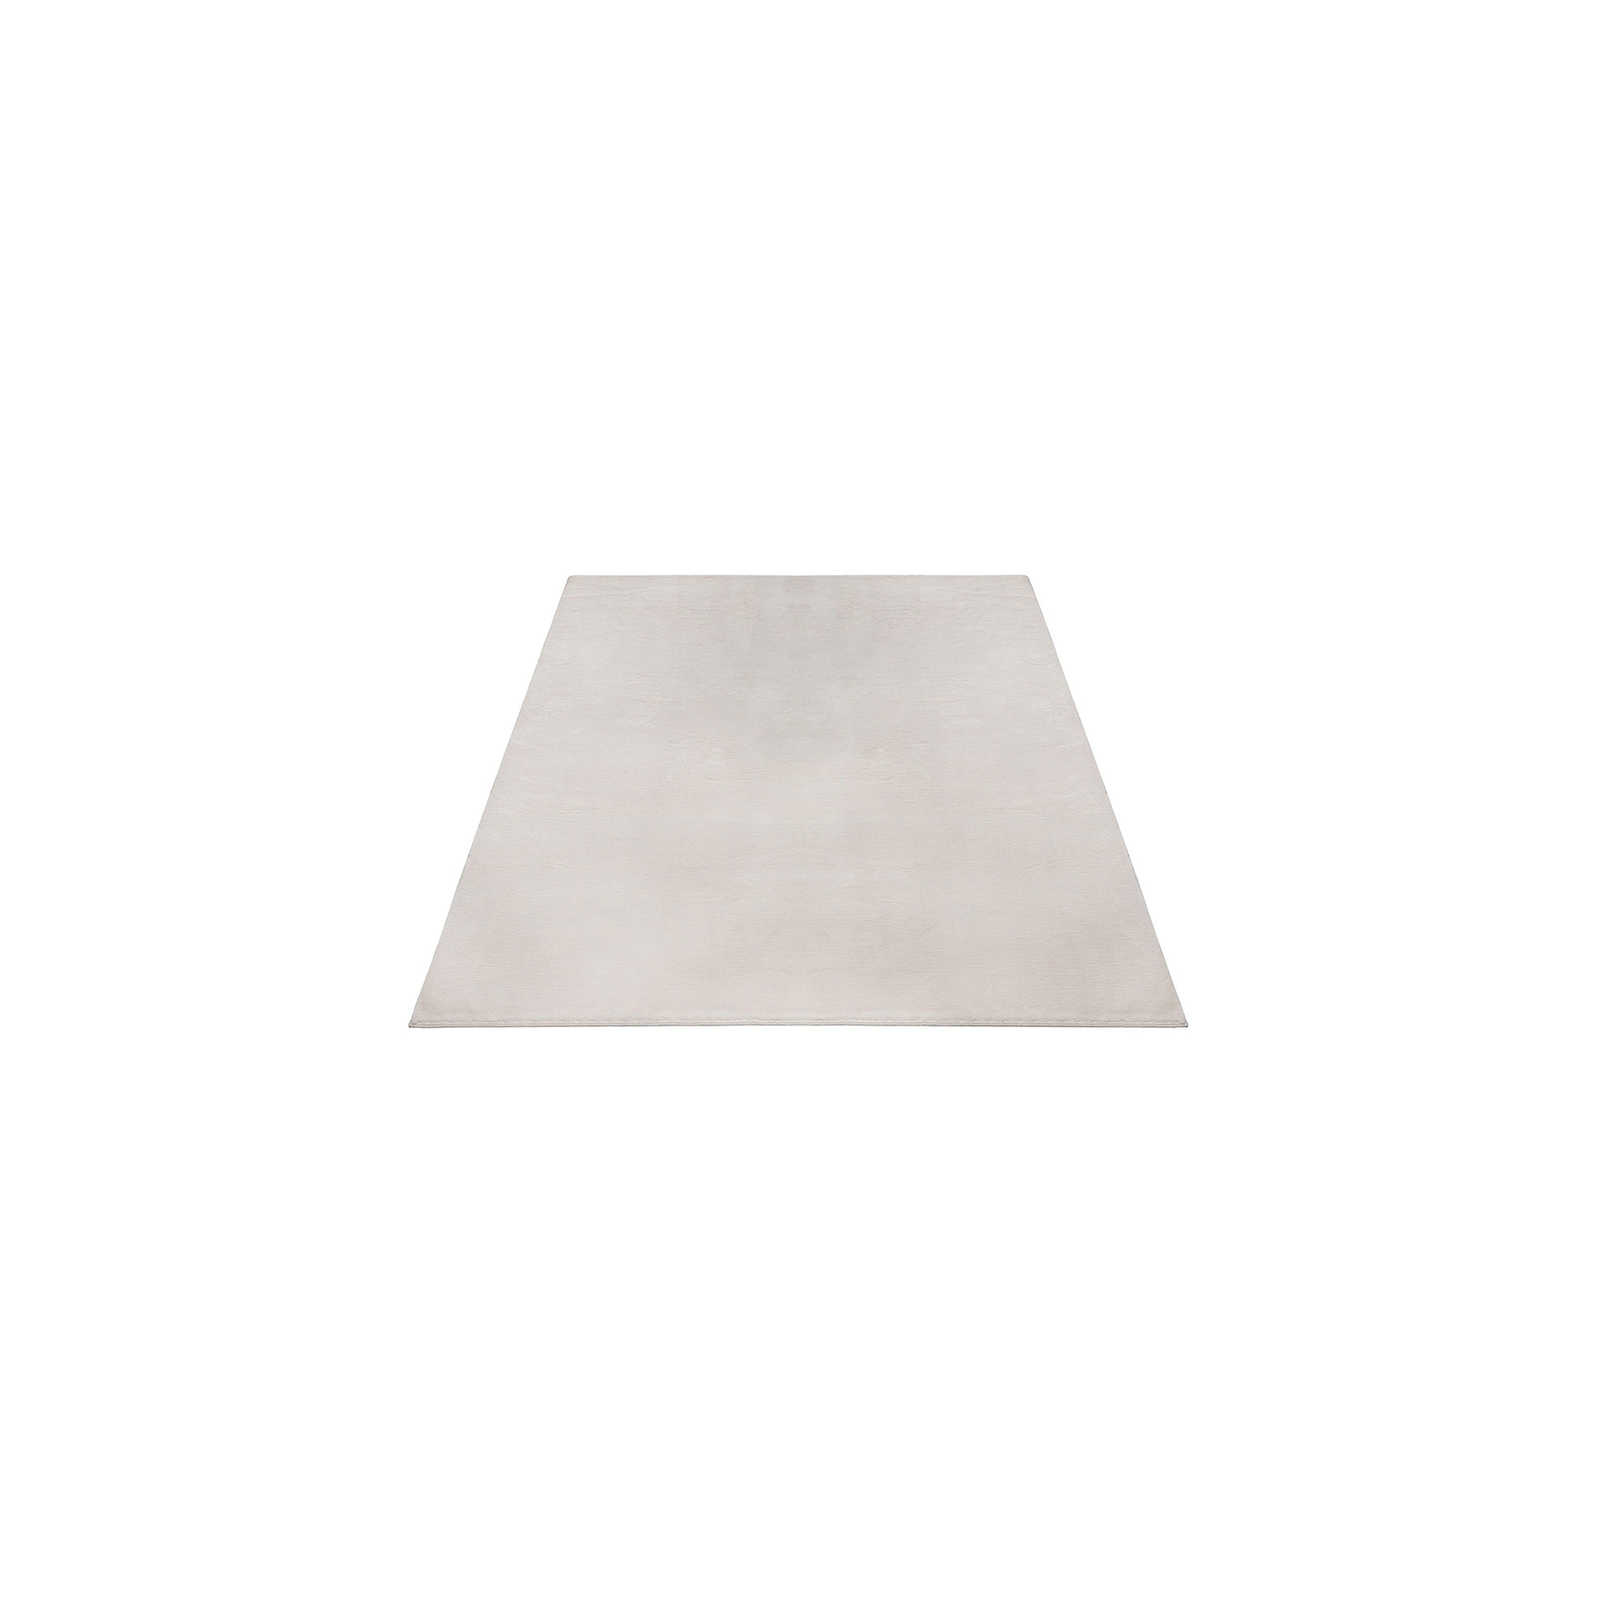 Kuschelweicher Hochflor Teppich in leichtem Beige – 150 x 80 cm
